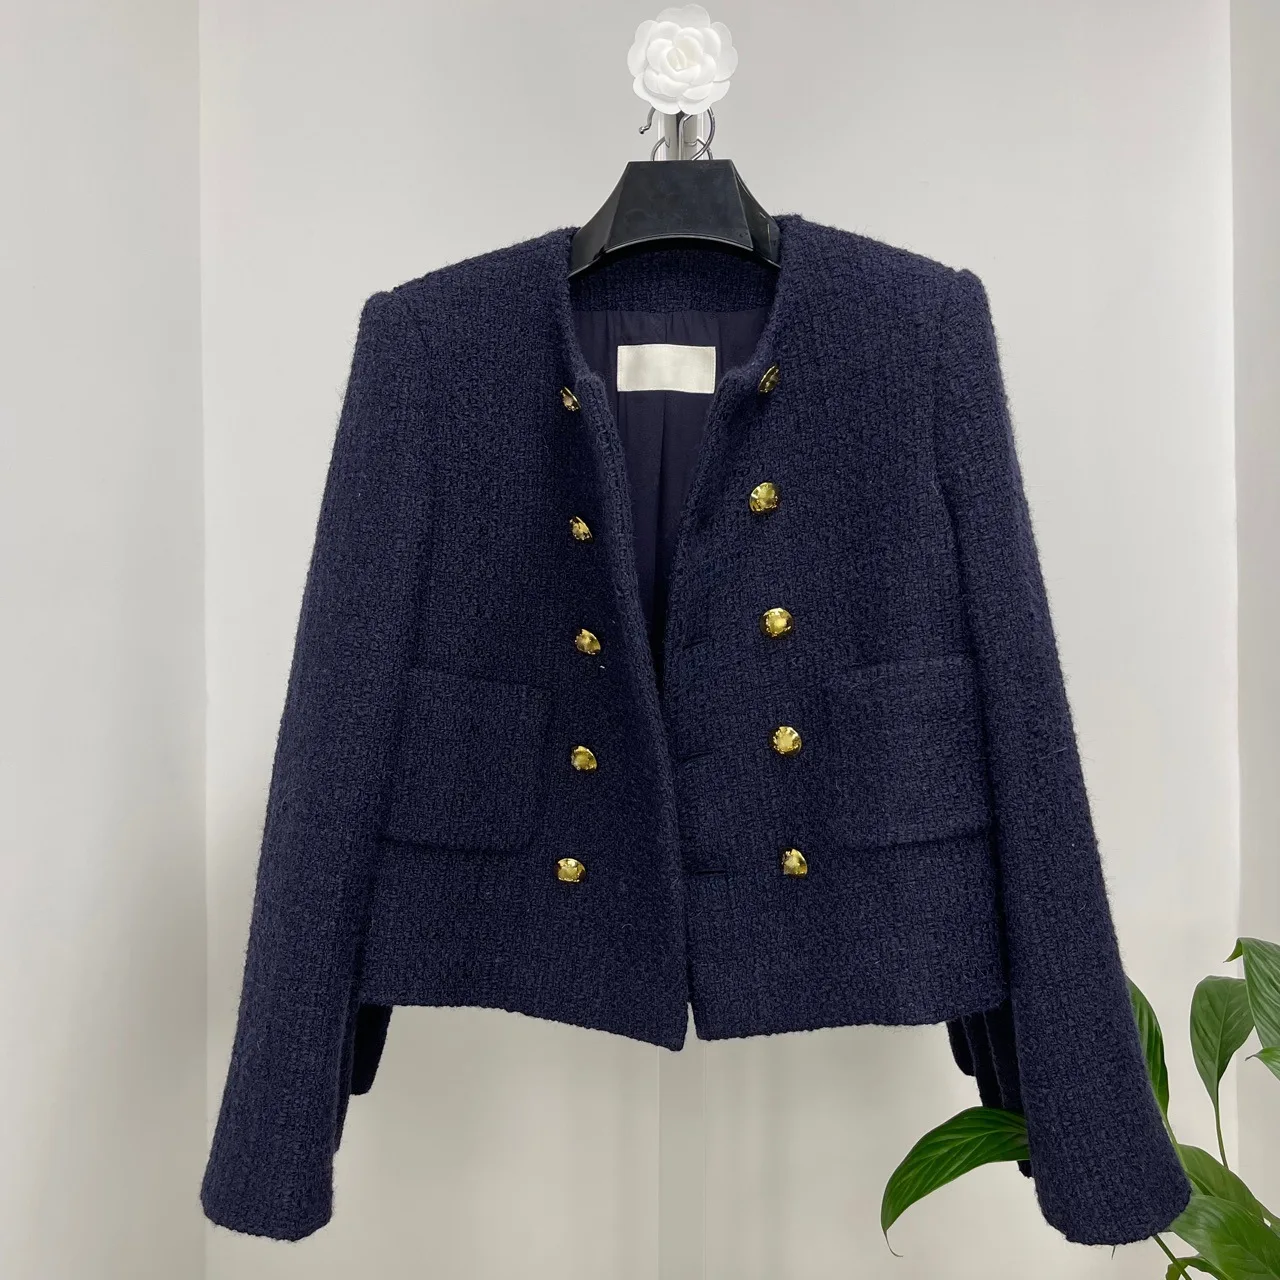 

Long Sleeve Overcoat Vintage Wool Jackets Women Tops Elegant Navy Blue Casaco Woolen Coat Female Abrigos Double Breasted Tweed